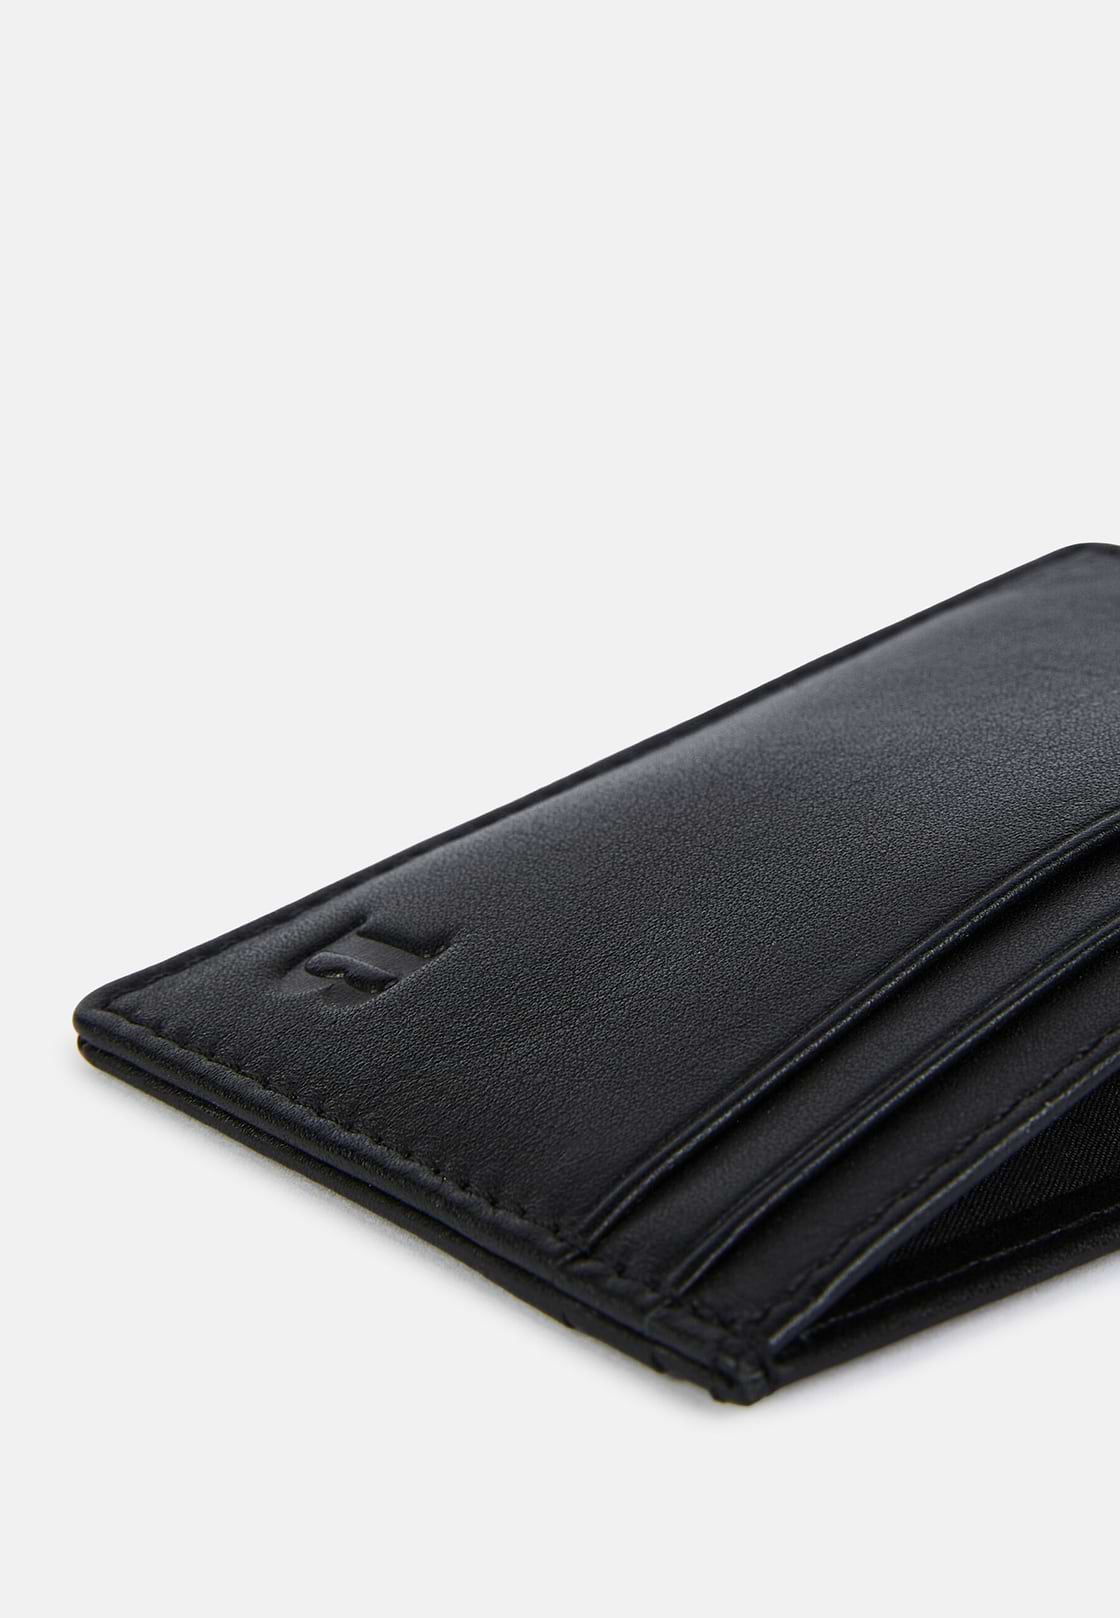 Leather Credit Card Holder, Black, hi-res